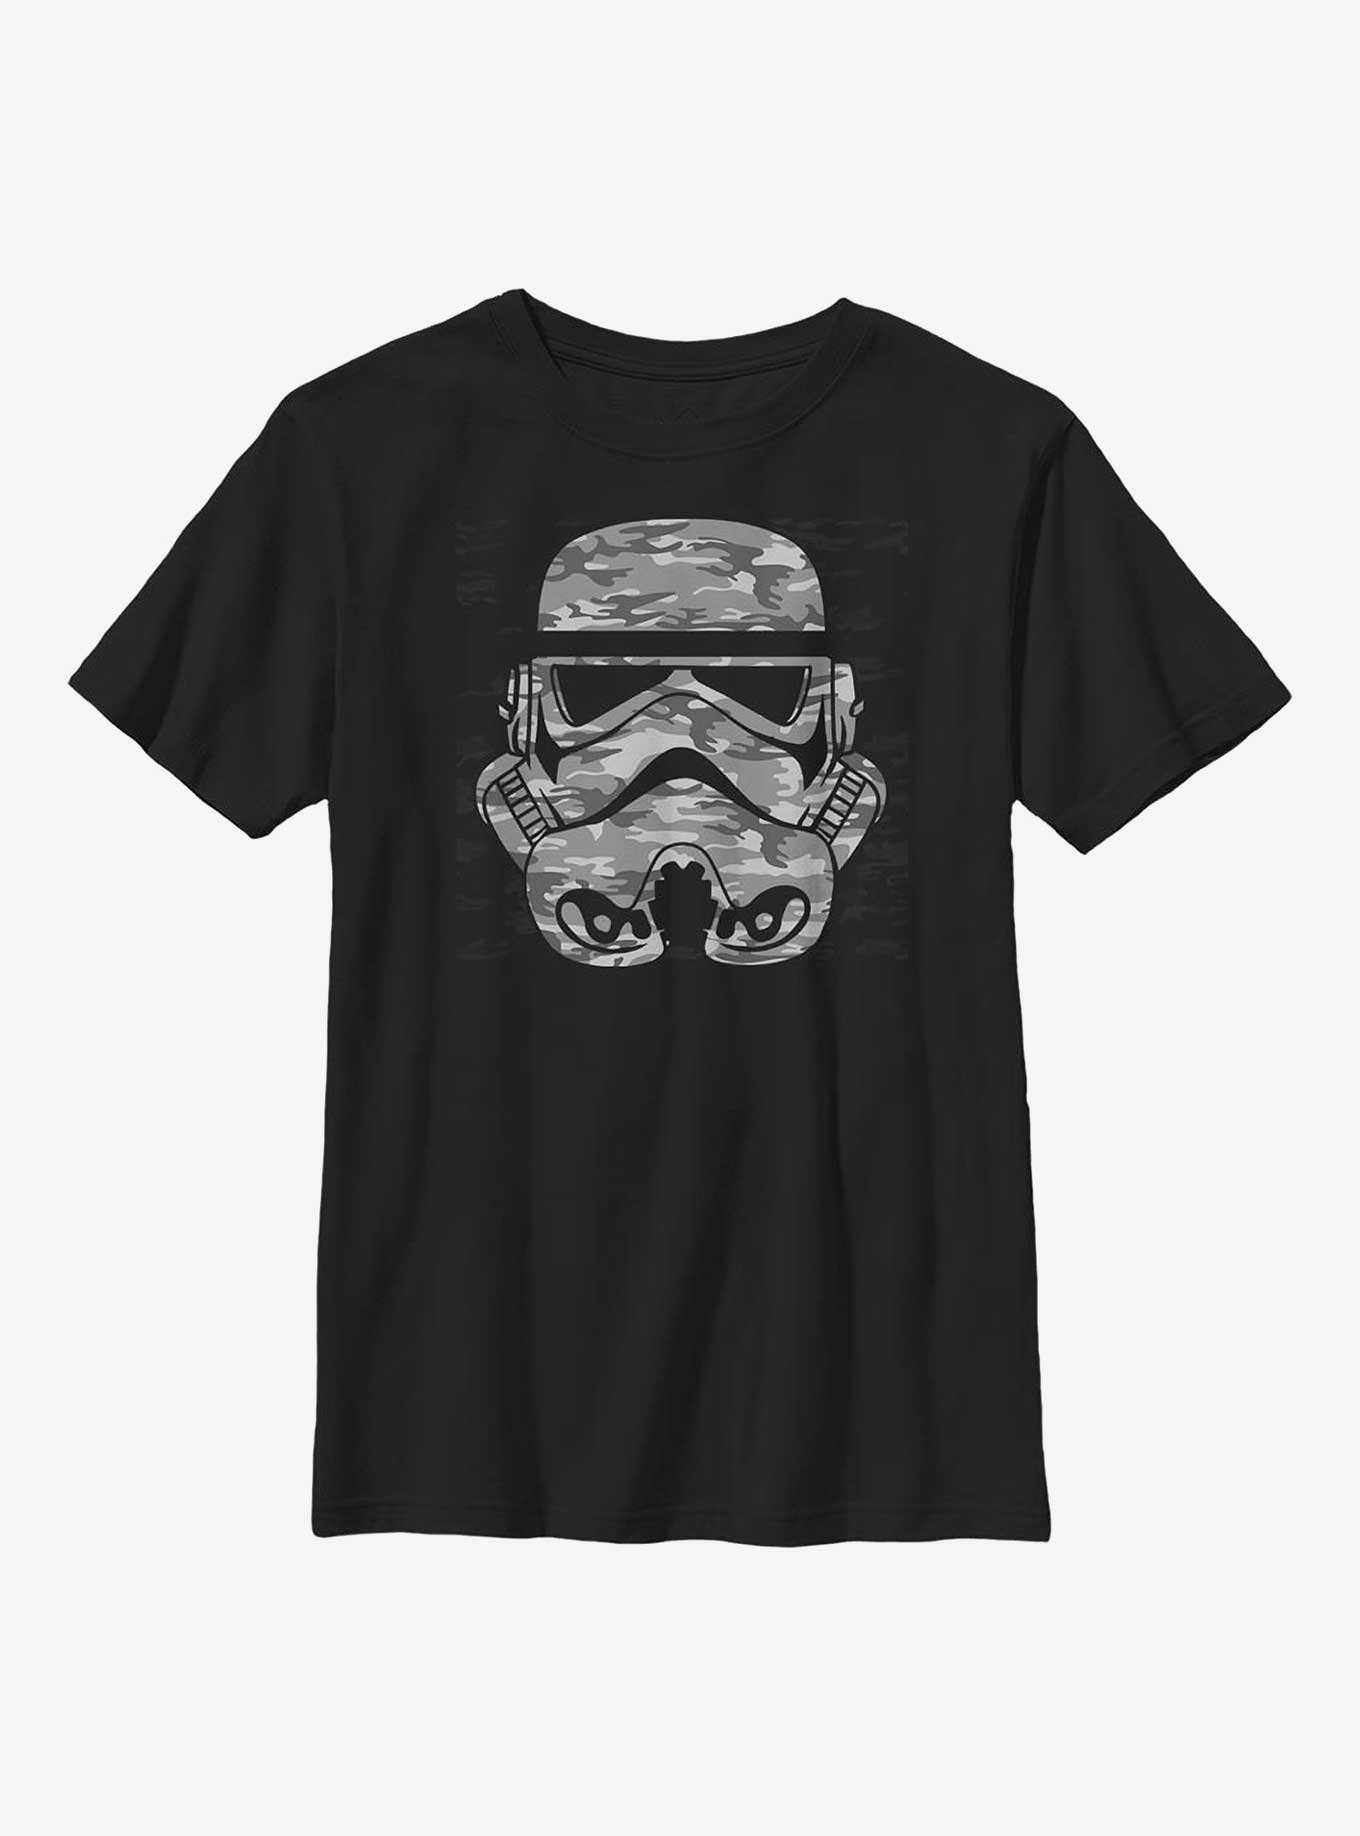 Star Wars Camo Stormtrooper Helmet Youth T-Shirt, , hi-res